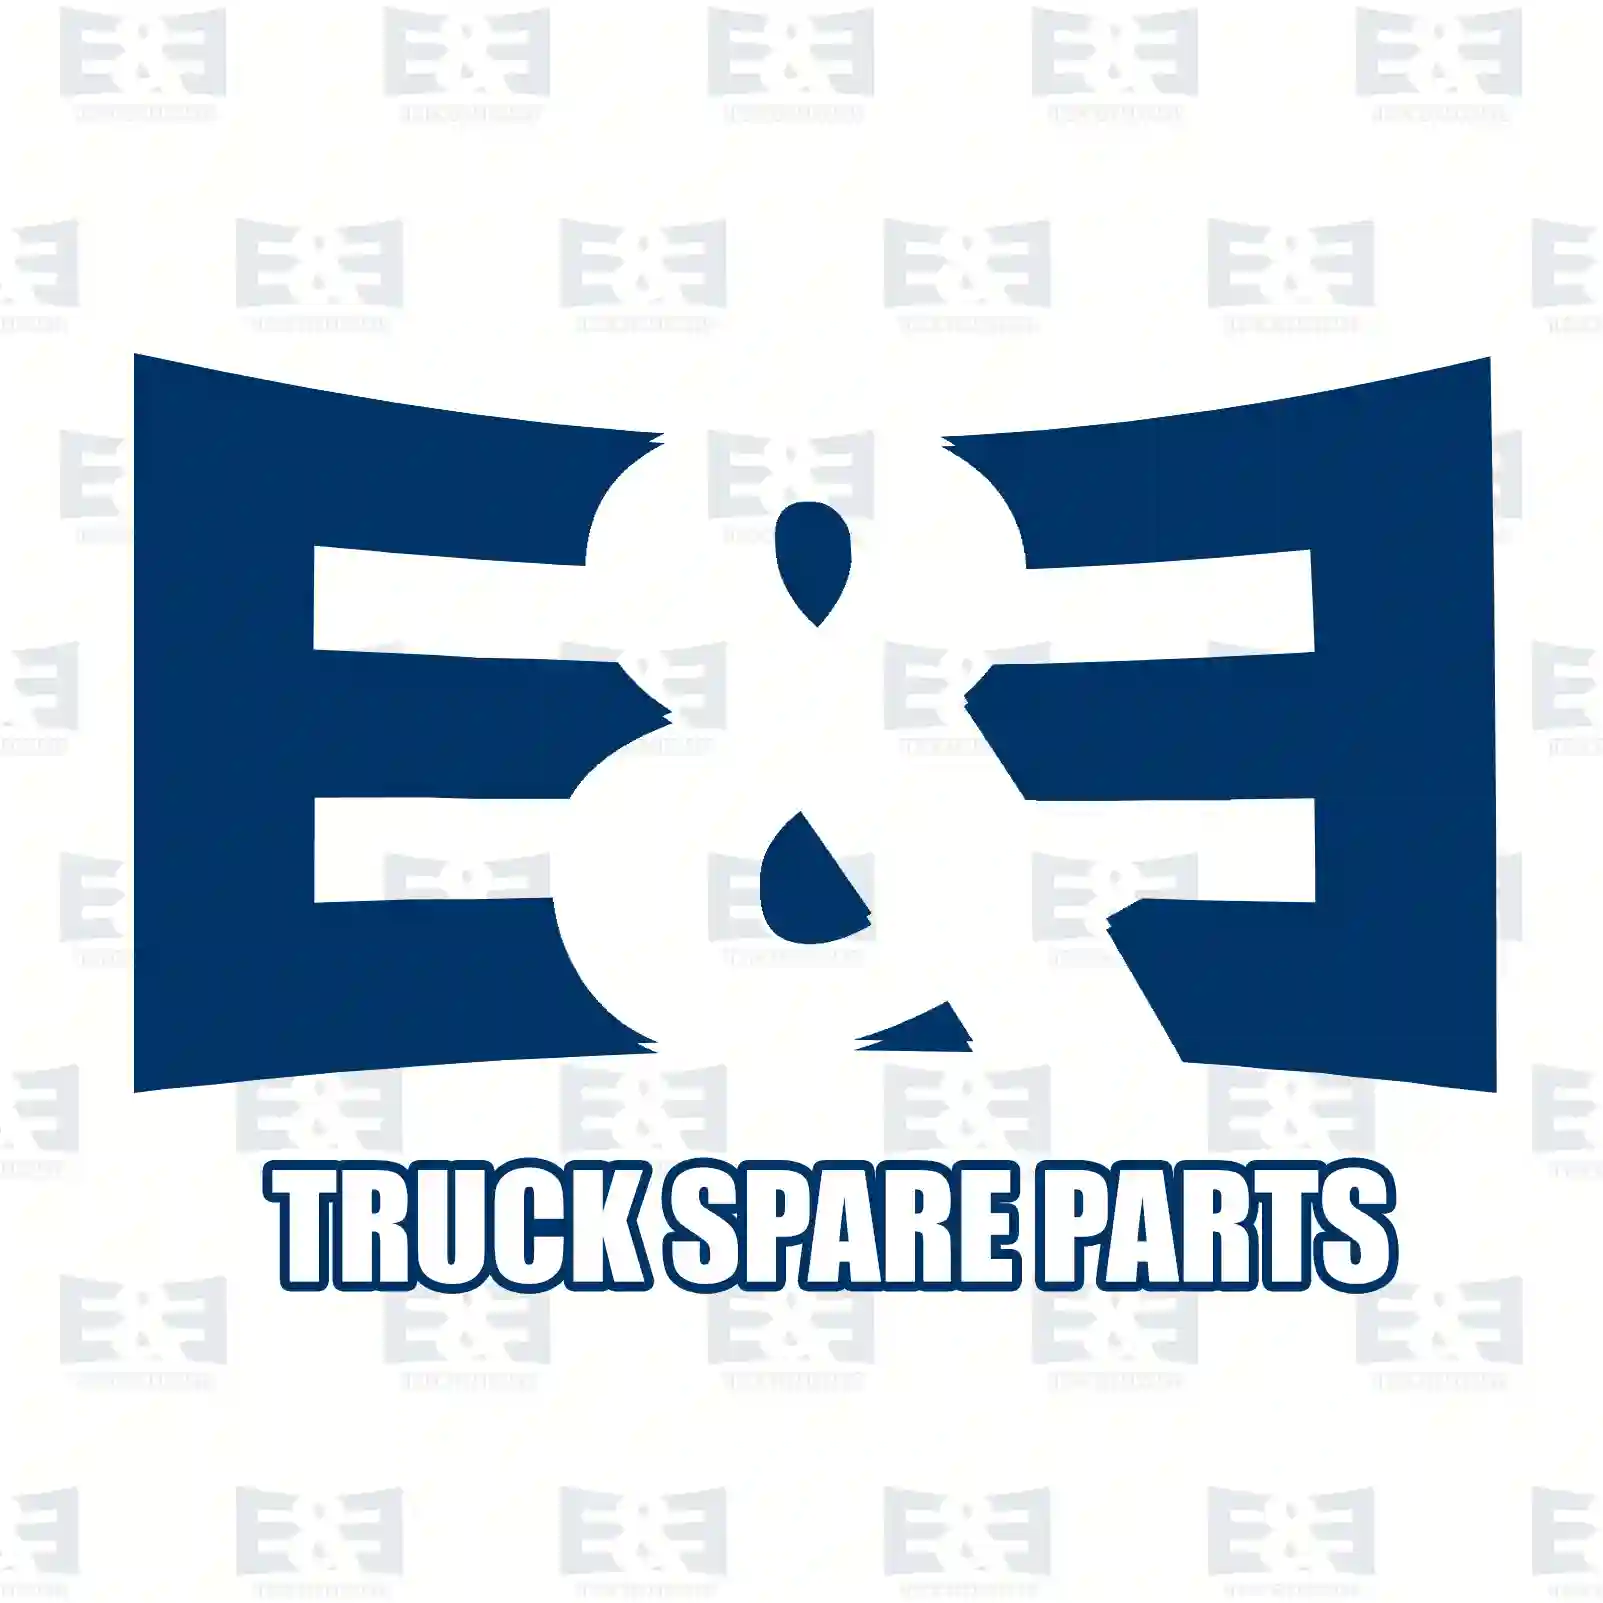 Compressor, 2E2293317, 10571184, 1303227, 1571184, 571184 ||  2E2293317 E&E Truck Spare Parts | Truck Spare Parts, Auotomotive Spare Parts Compressor, 2E2293317, 10571184, 1303227, 1571184, 571184 ||  2E2293317 E&E Truck Spare Parts | Truck Spare Parts, Auotomotive Spare Parts